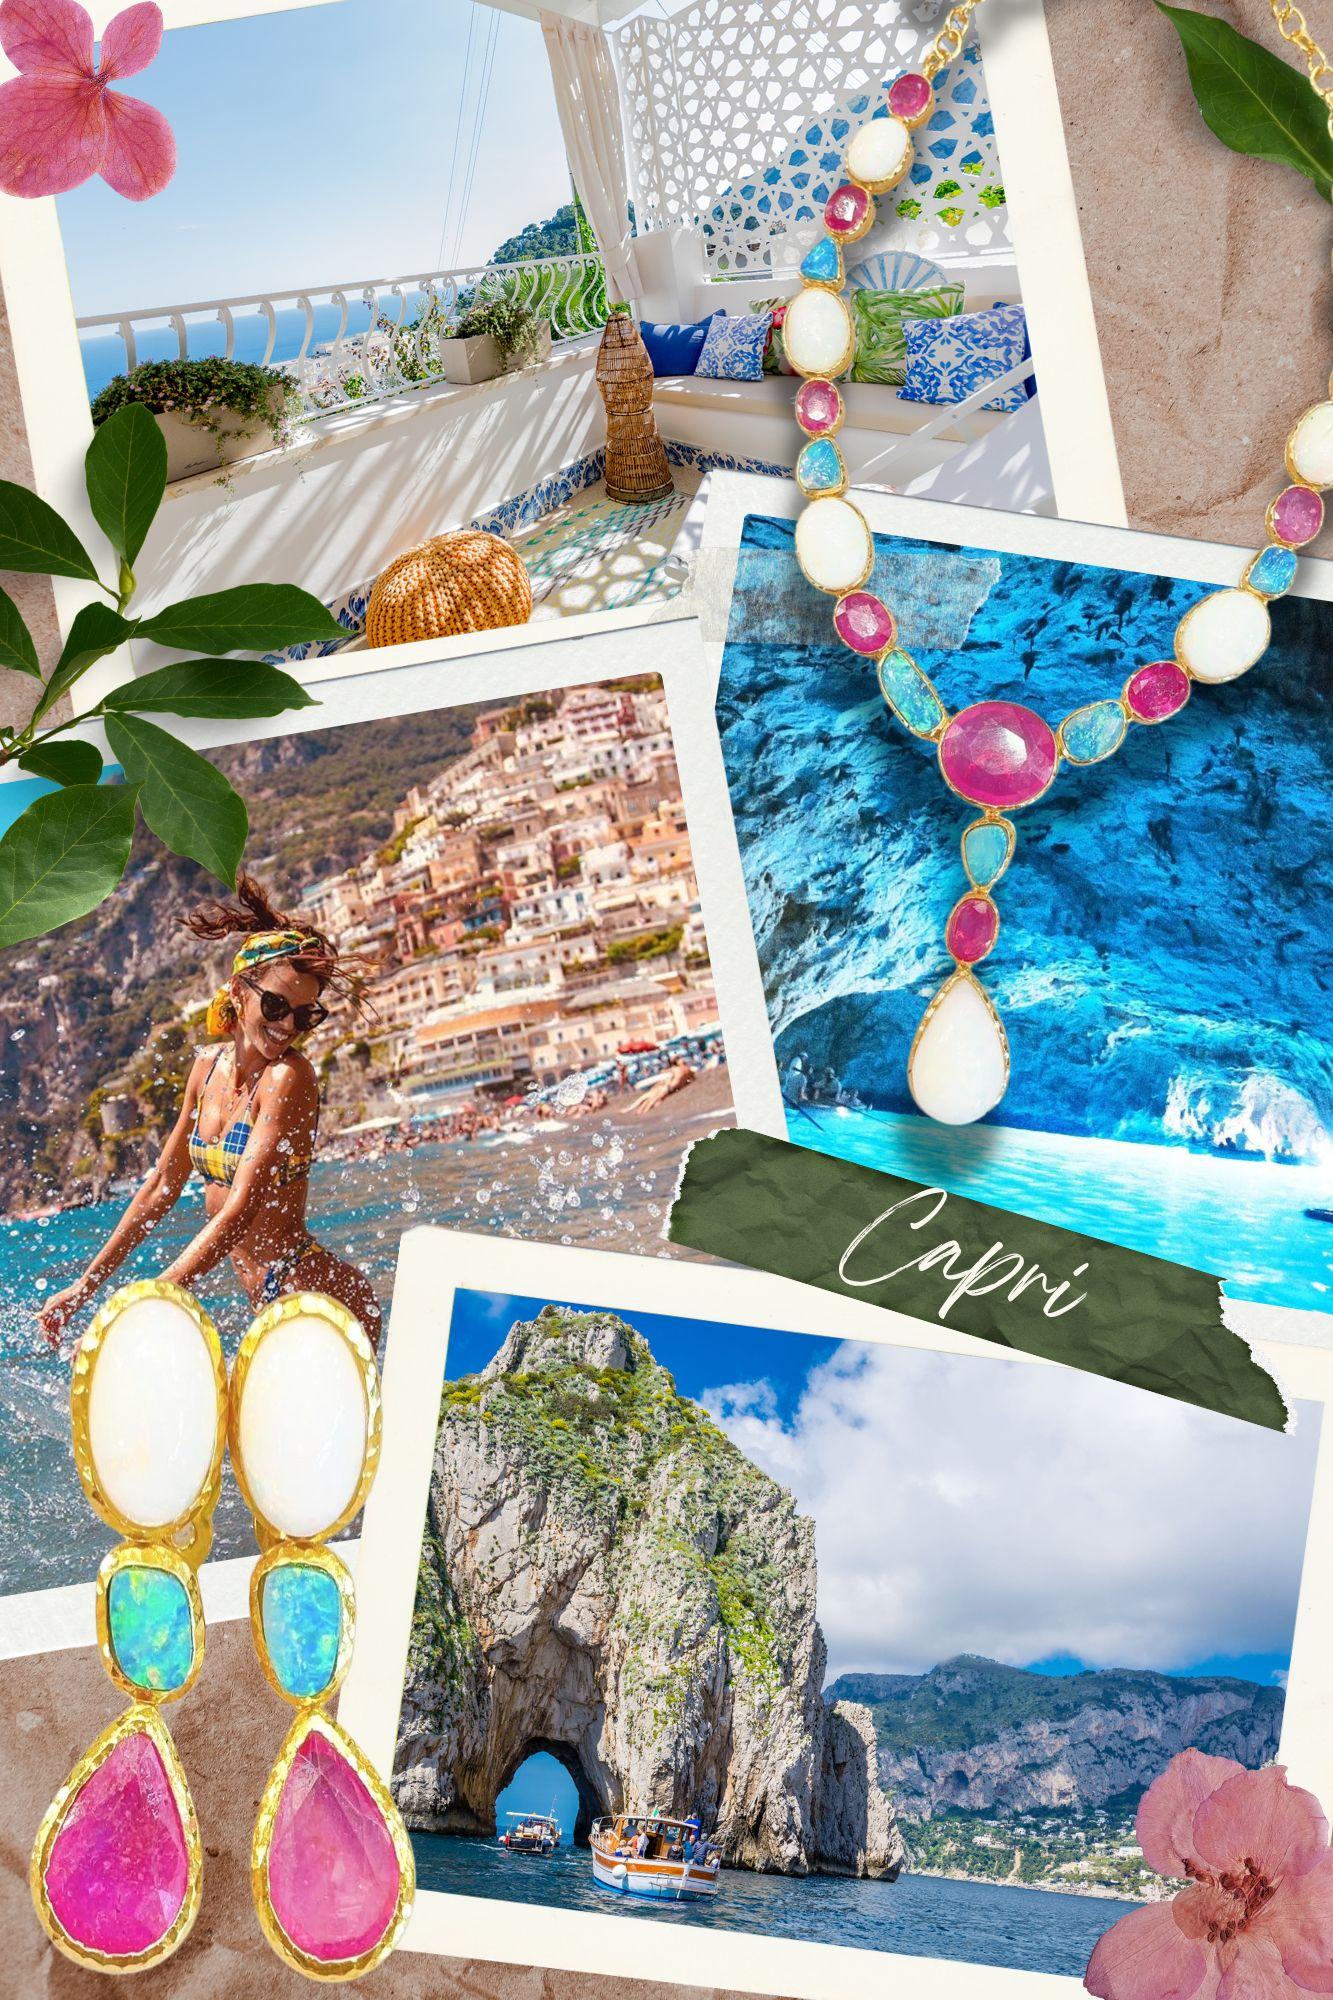 Belle Époque Bochic “Capri” Blue Opal, Ruby & Sapphire Necklace Set in 22k Gold & Silver For Sale